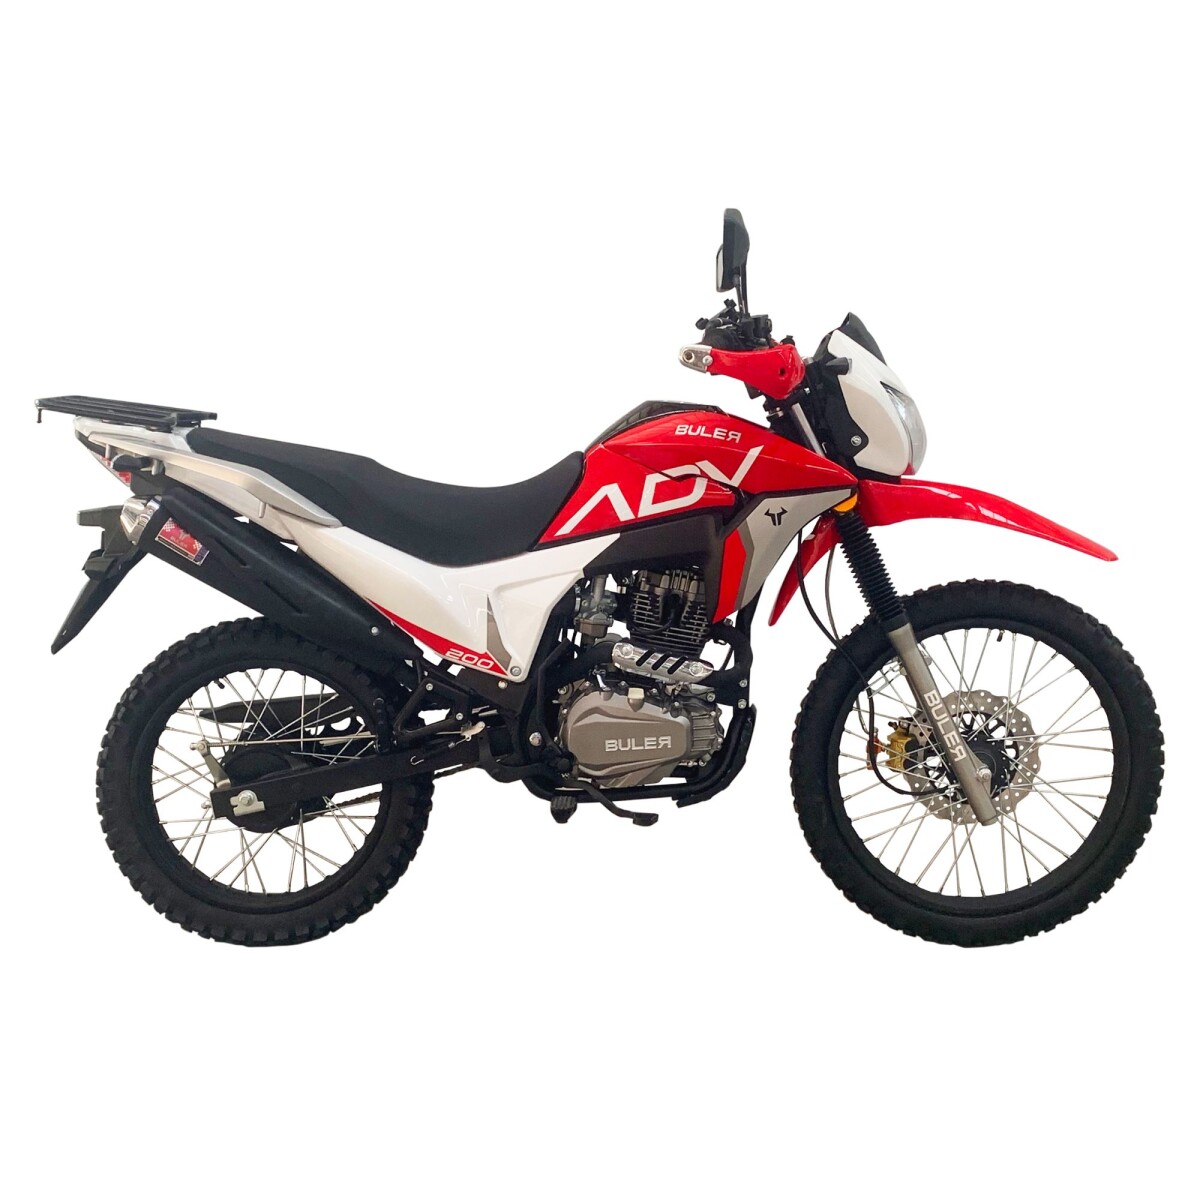 Motocicleta Buler Trail Adventure 200cc - Rayos - Rojo 